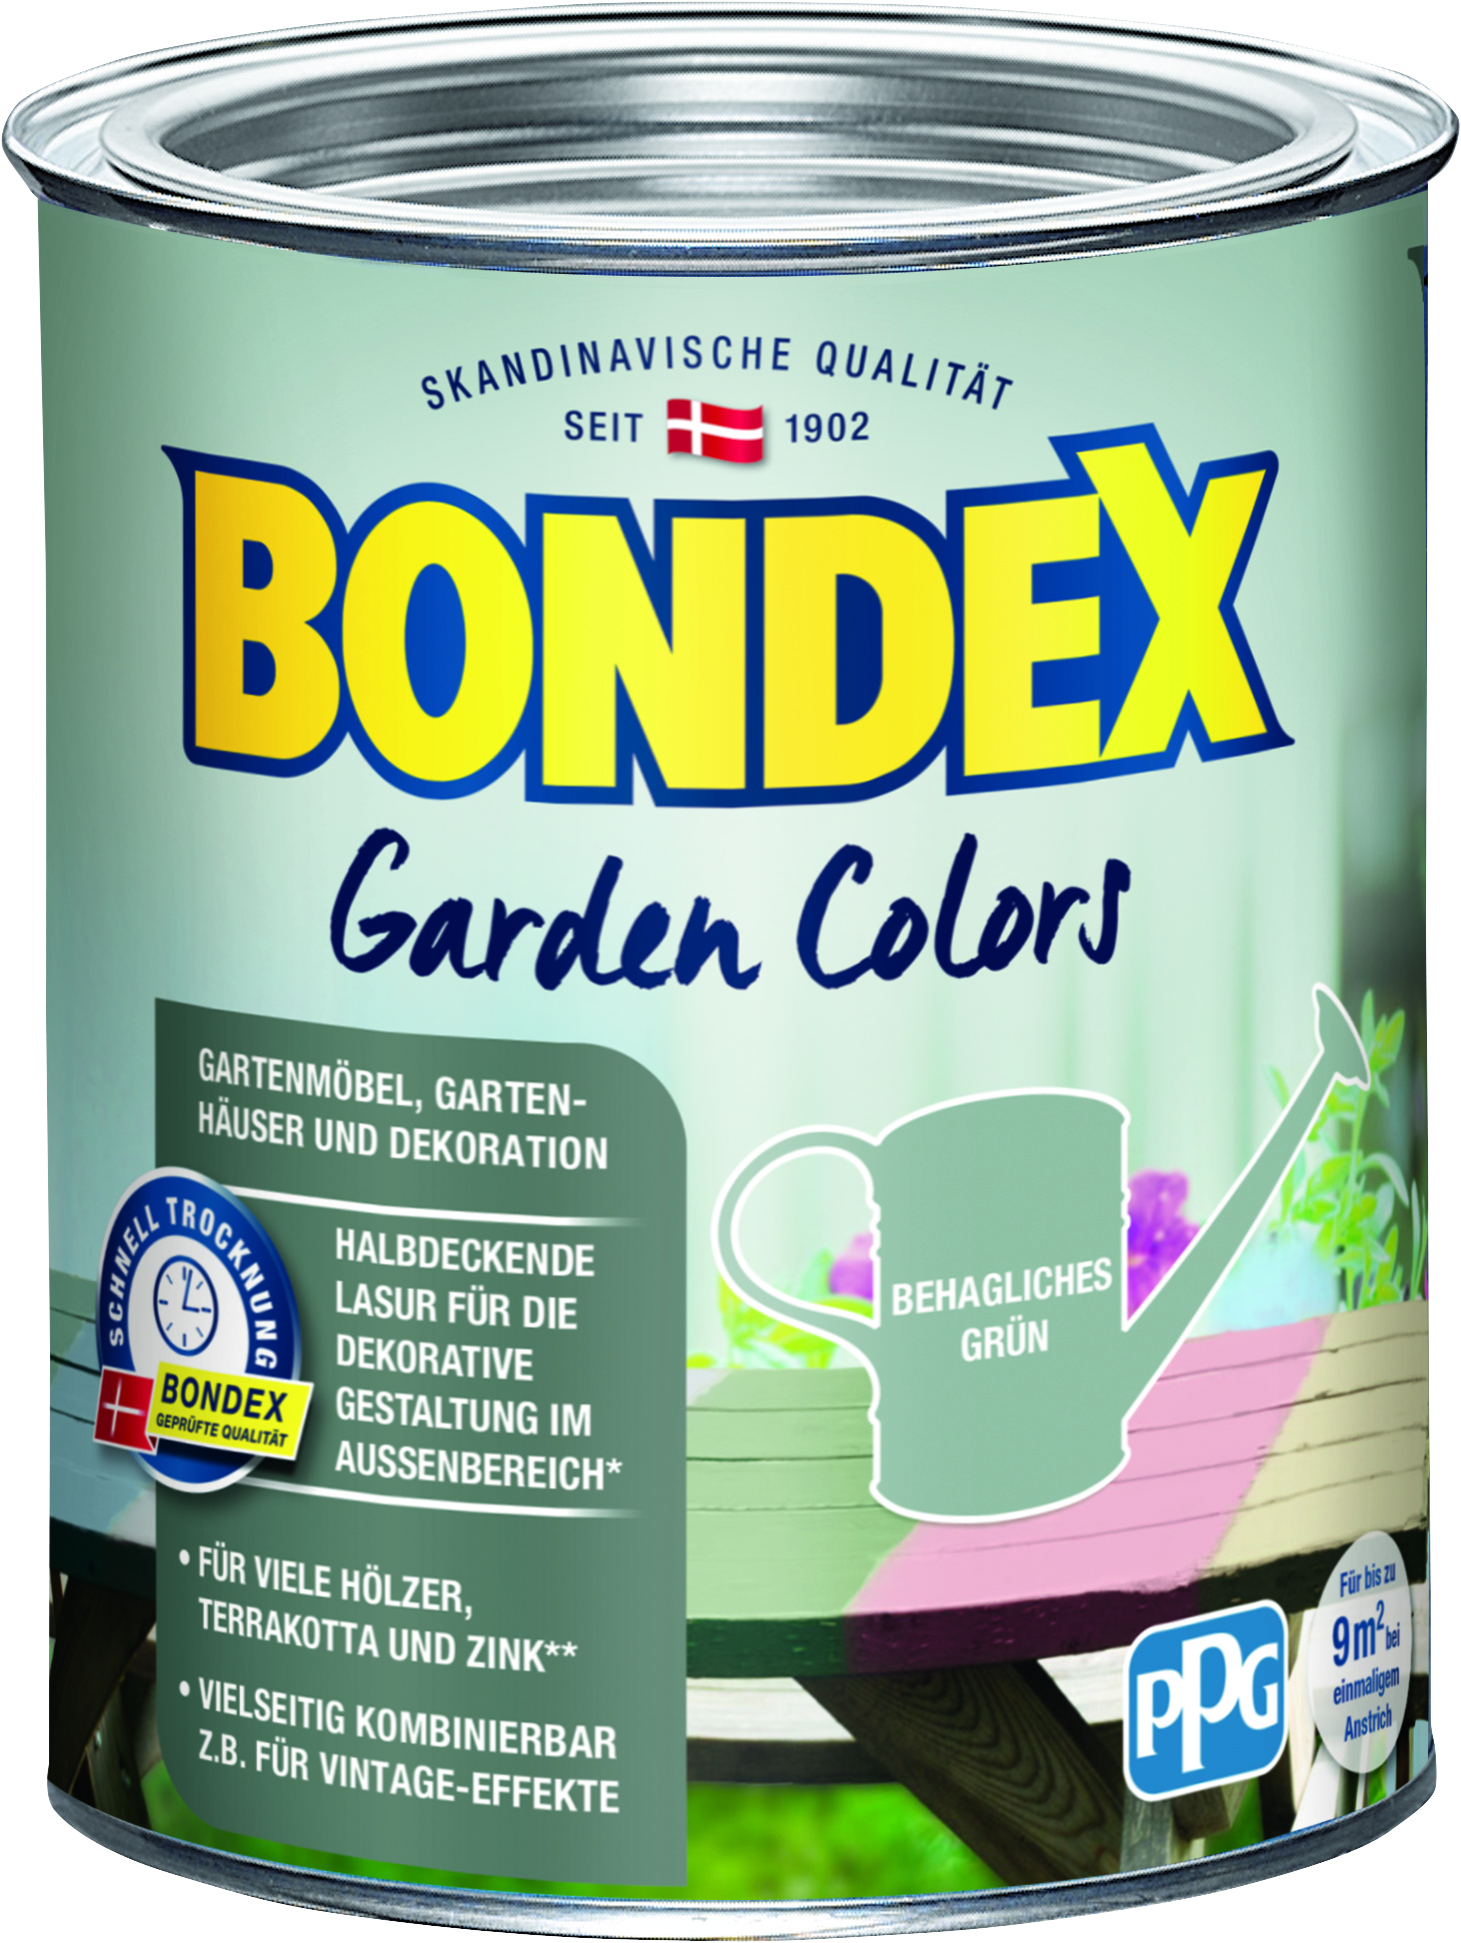 Bondex Garden Colors Behagliches Grün, 750ml